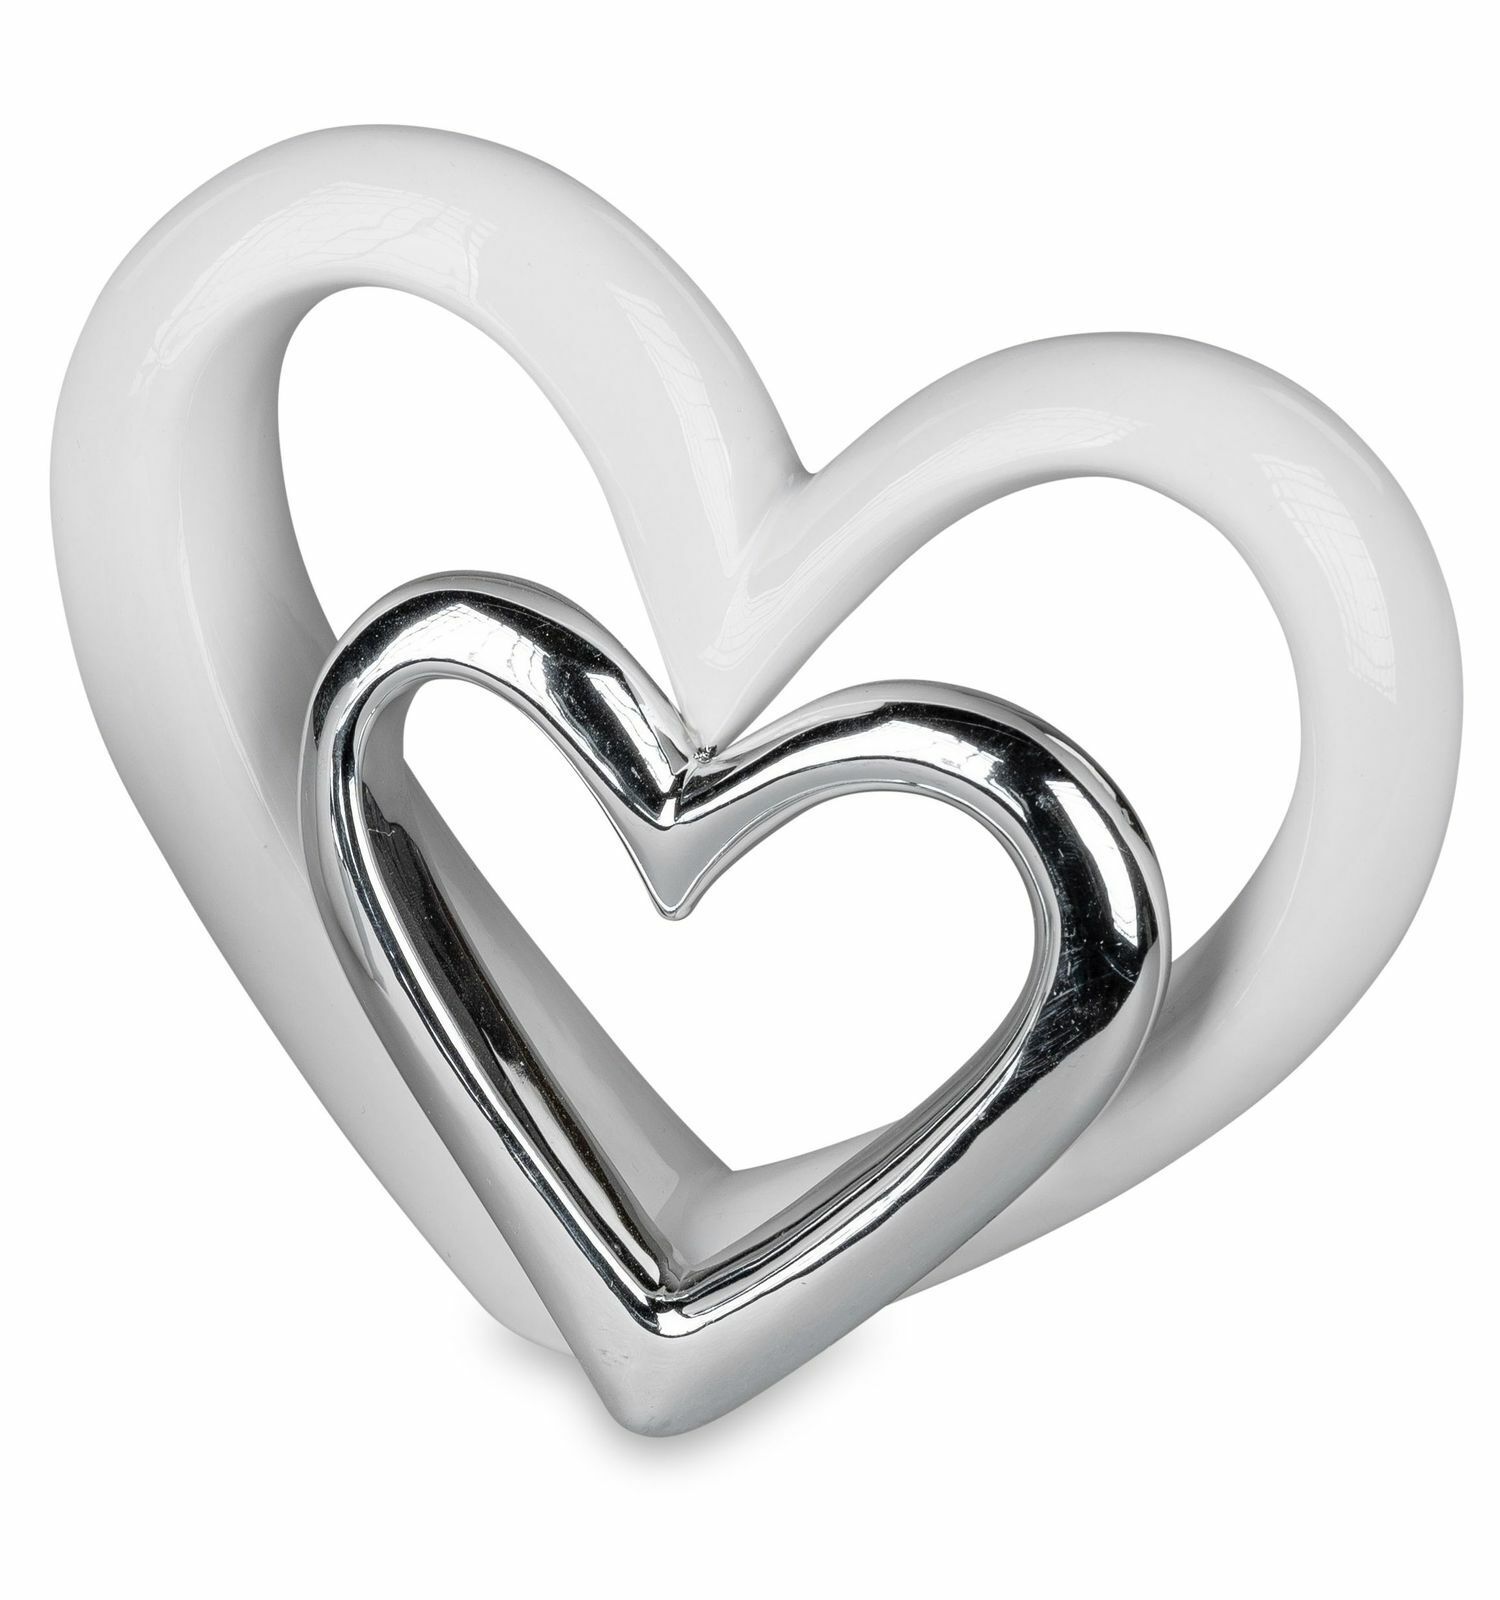 Moderne Tischdeko Herzform zum stellen 19 cm Herz Heart Liebe